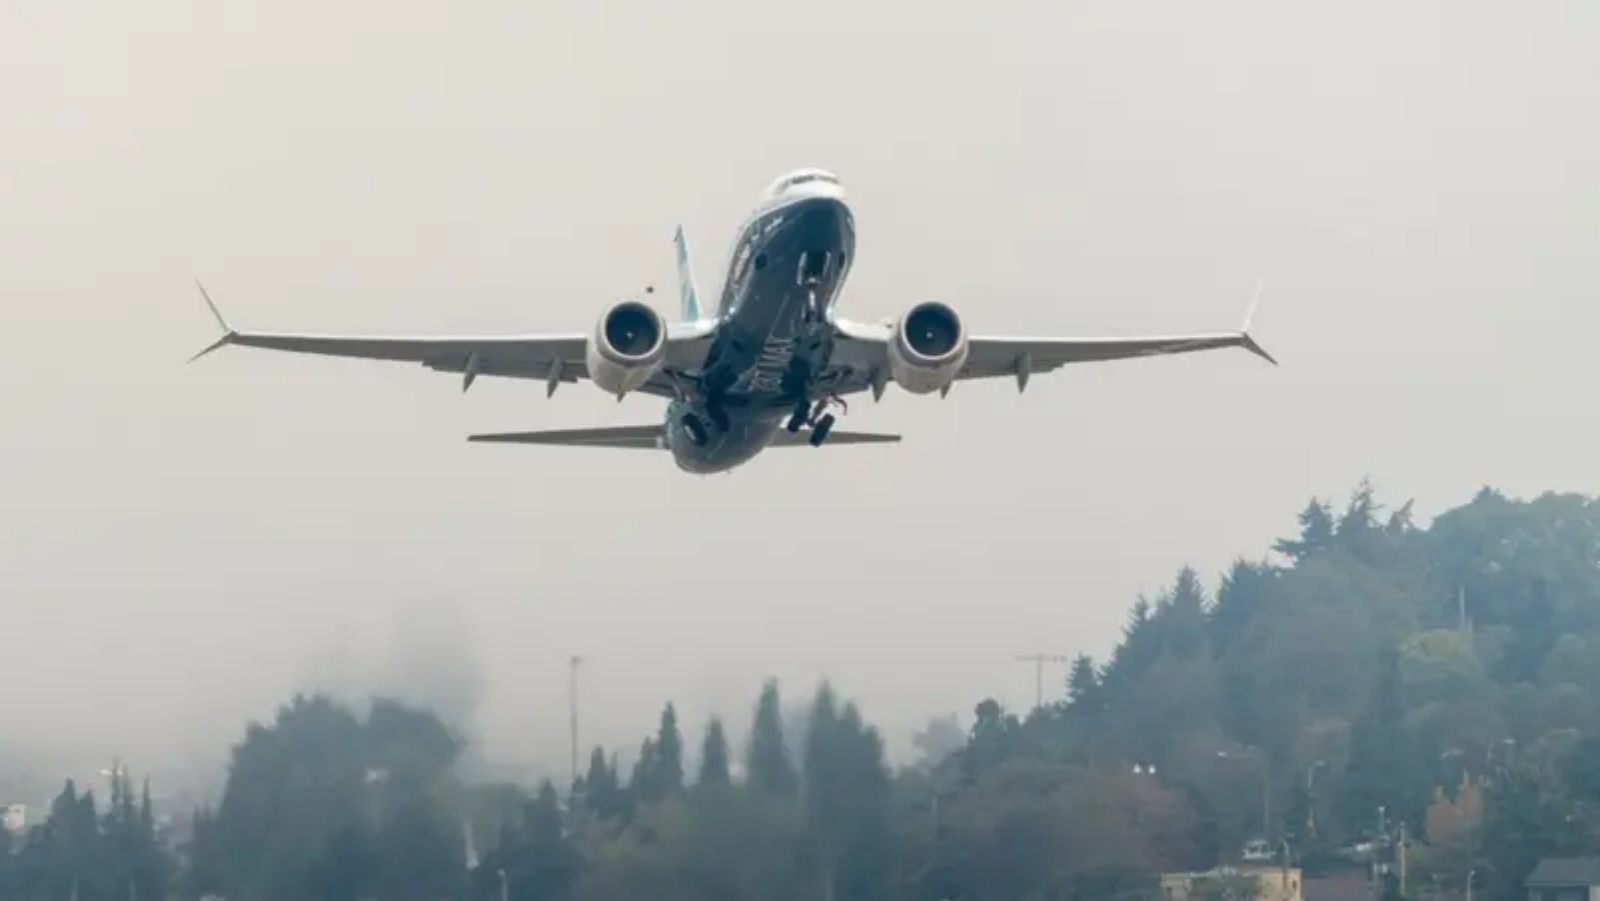 طائرة بوينج 737 ماكس يقودها رئيس إدارة الطيران الفيدرالية ستيف ديكسون تقلع خلال رحلة تجريبية من بوينج فيلد، في 30 سبتمبر 2020 في سياتل، واشنطن